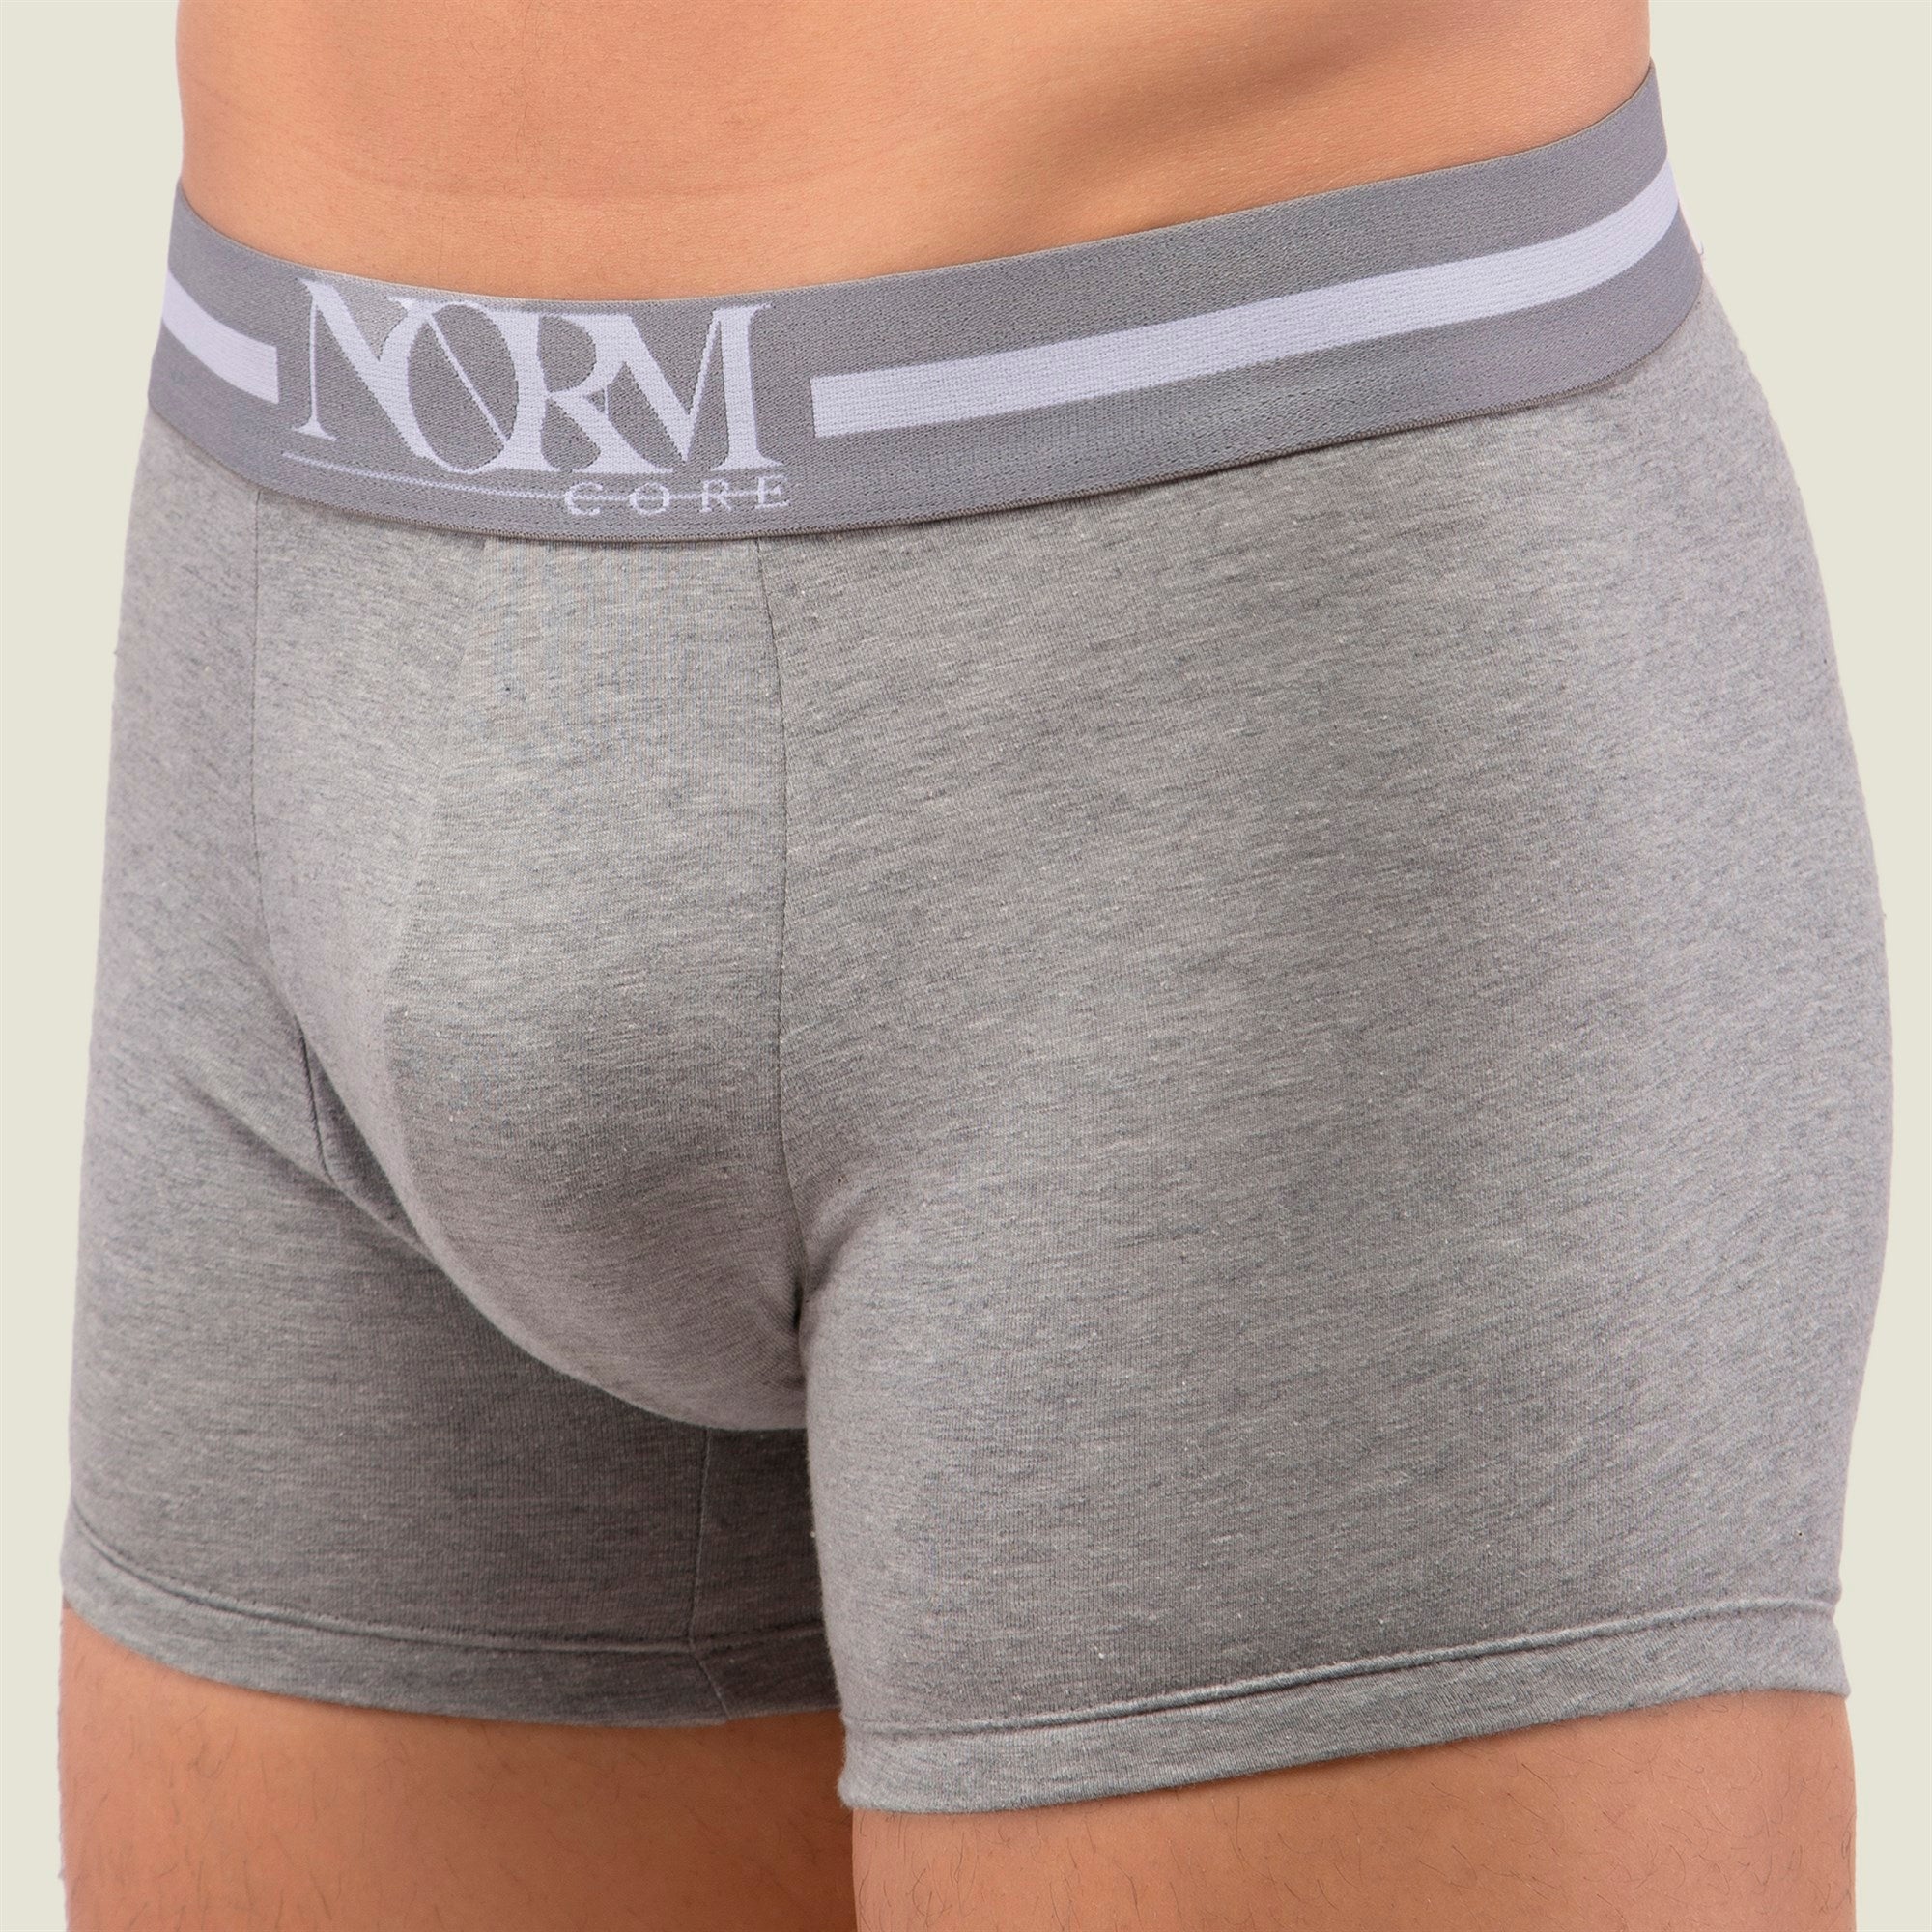 Normcore Cotton Innerwear - Grey Trunk with Grey Waistband Underwear